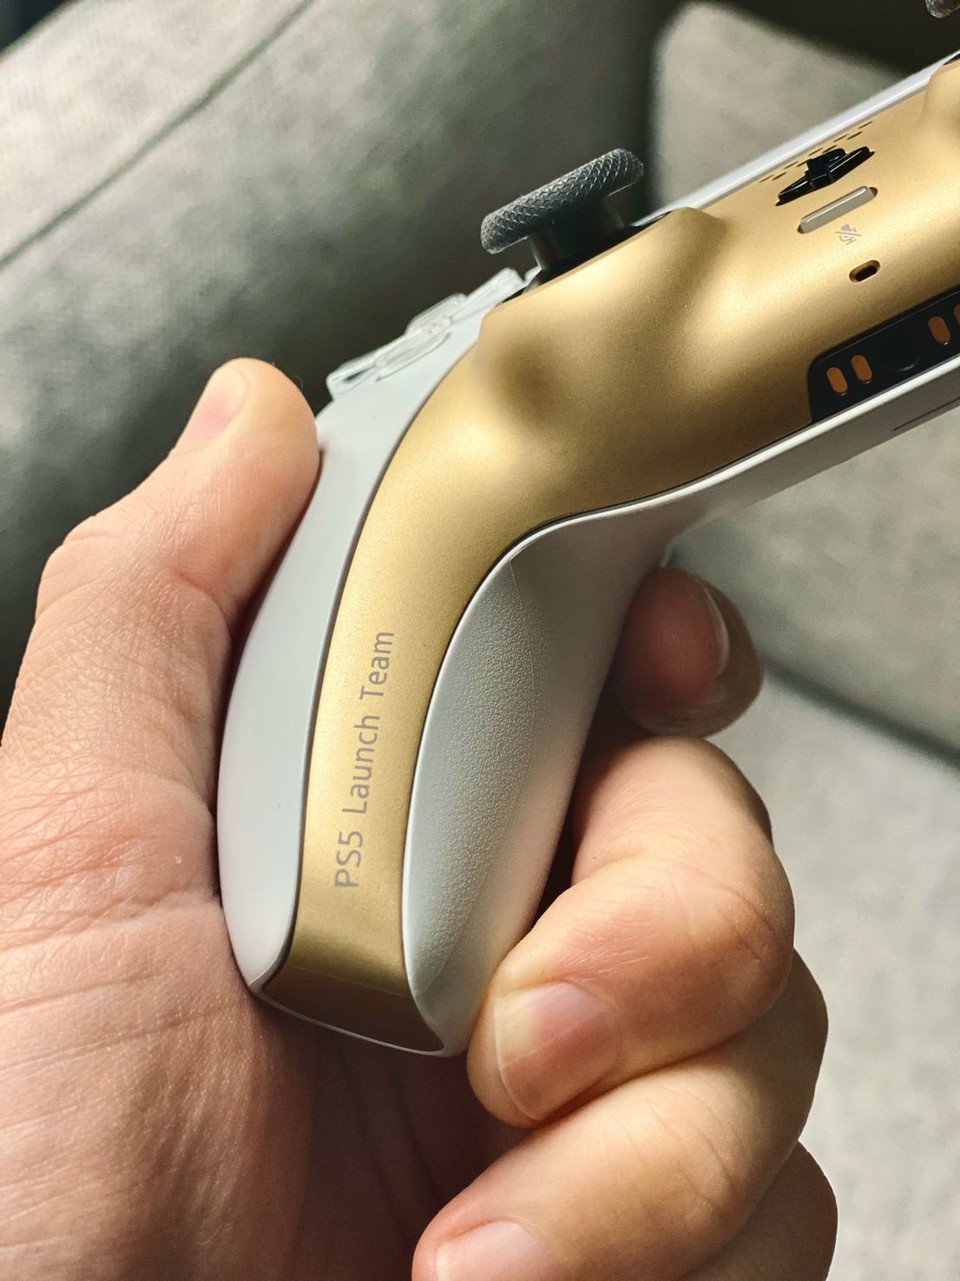 So sieht der PS5-Controller DualSense in schickem Gold-Look aus (Bild: Joey Rabbit auf LinkedIn).